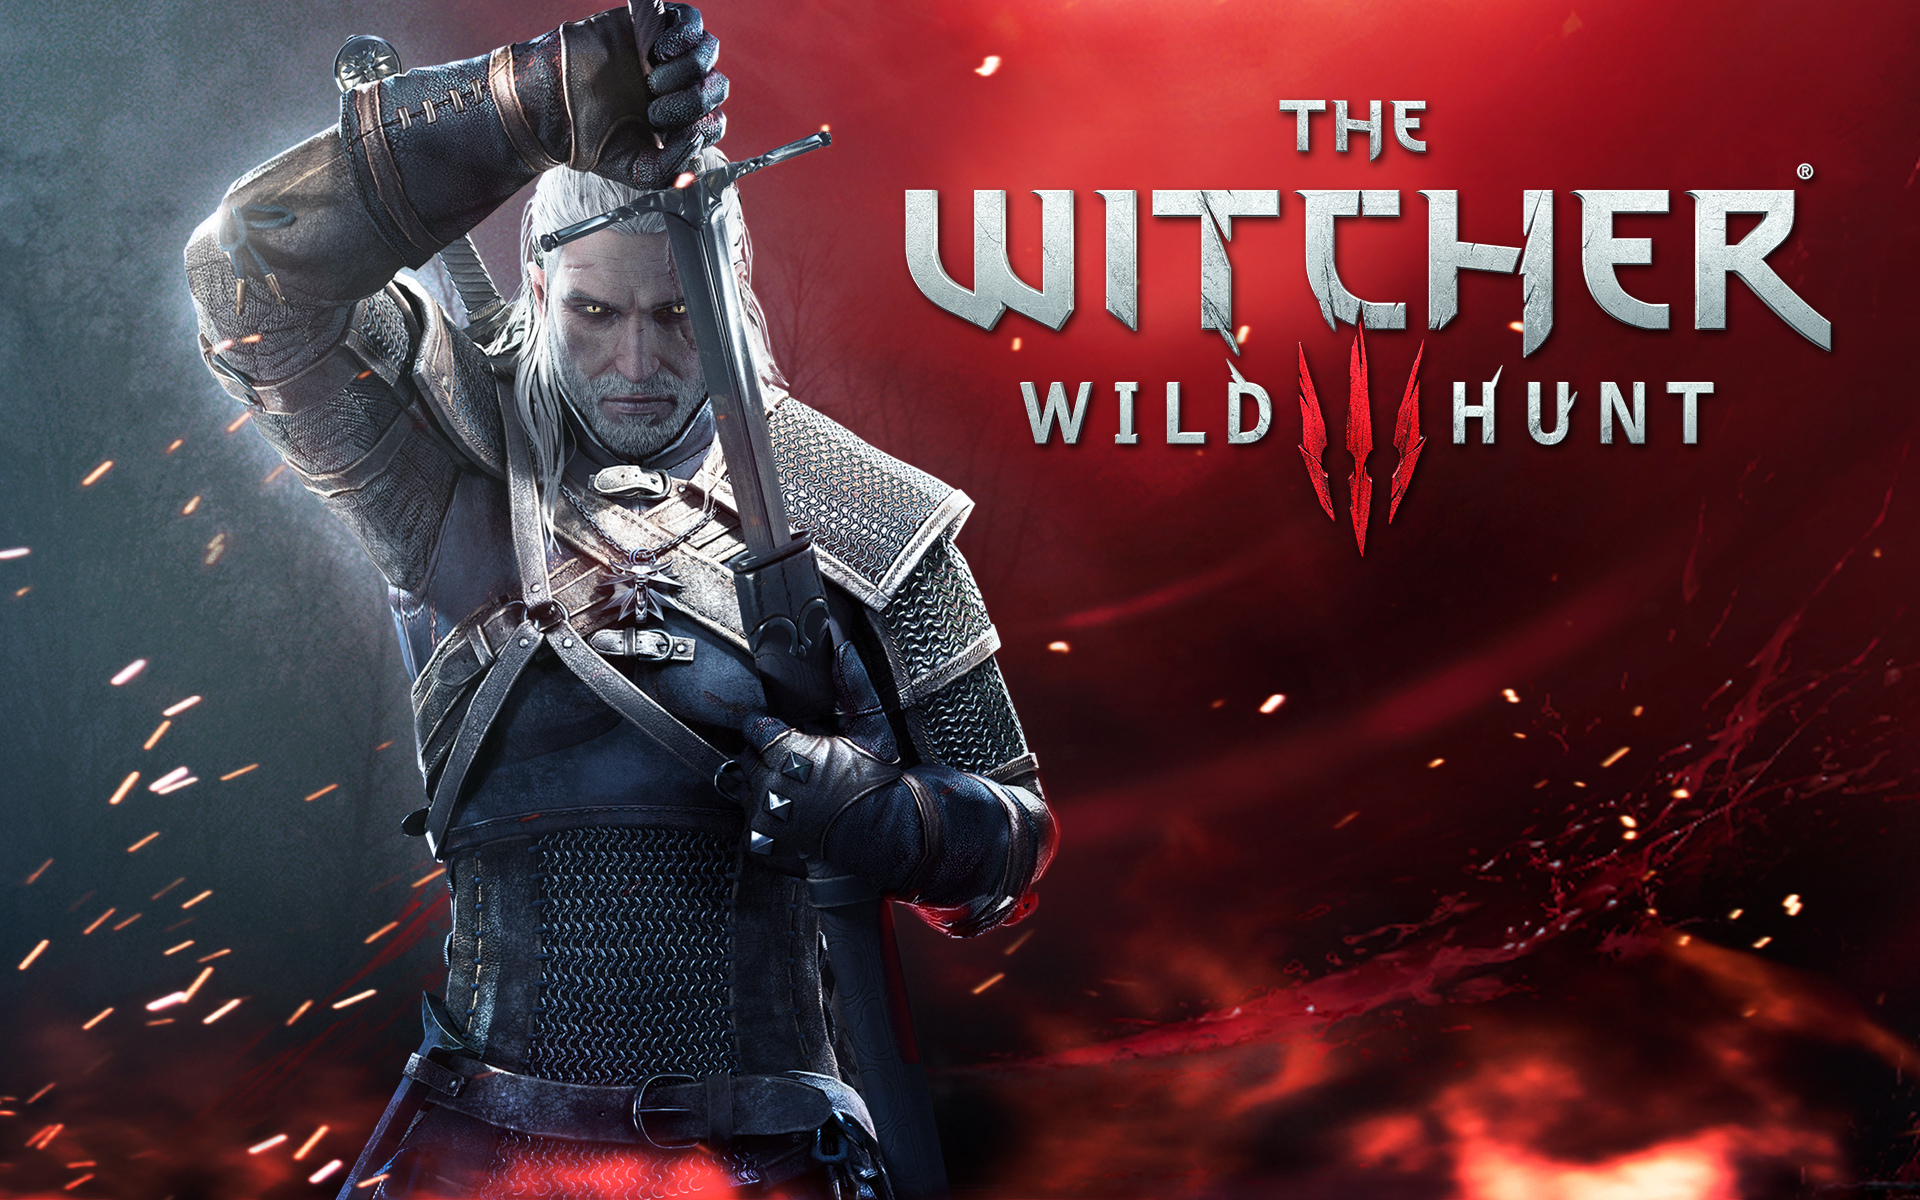 Fondos de pantalla The Witcher 3 Wild Hunt, Wallpapers Gratis